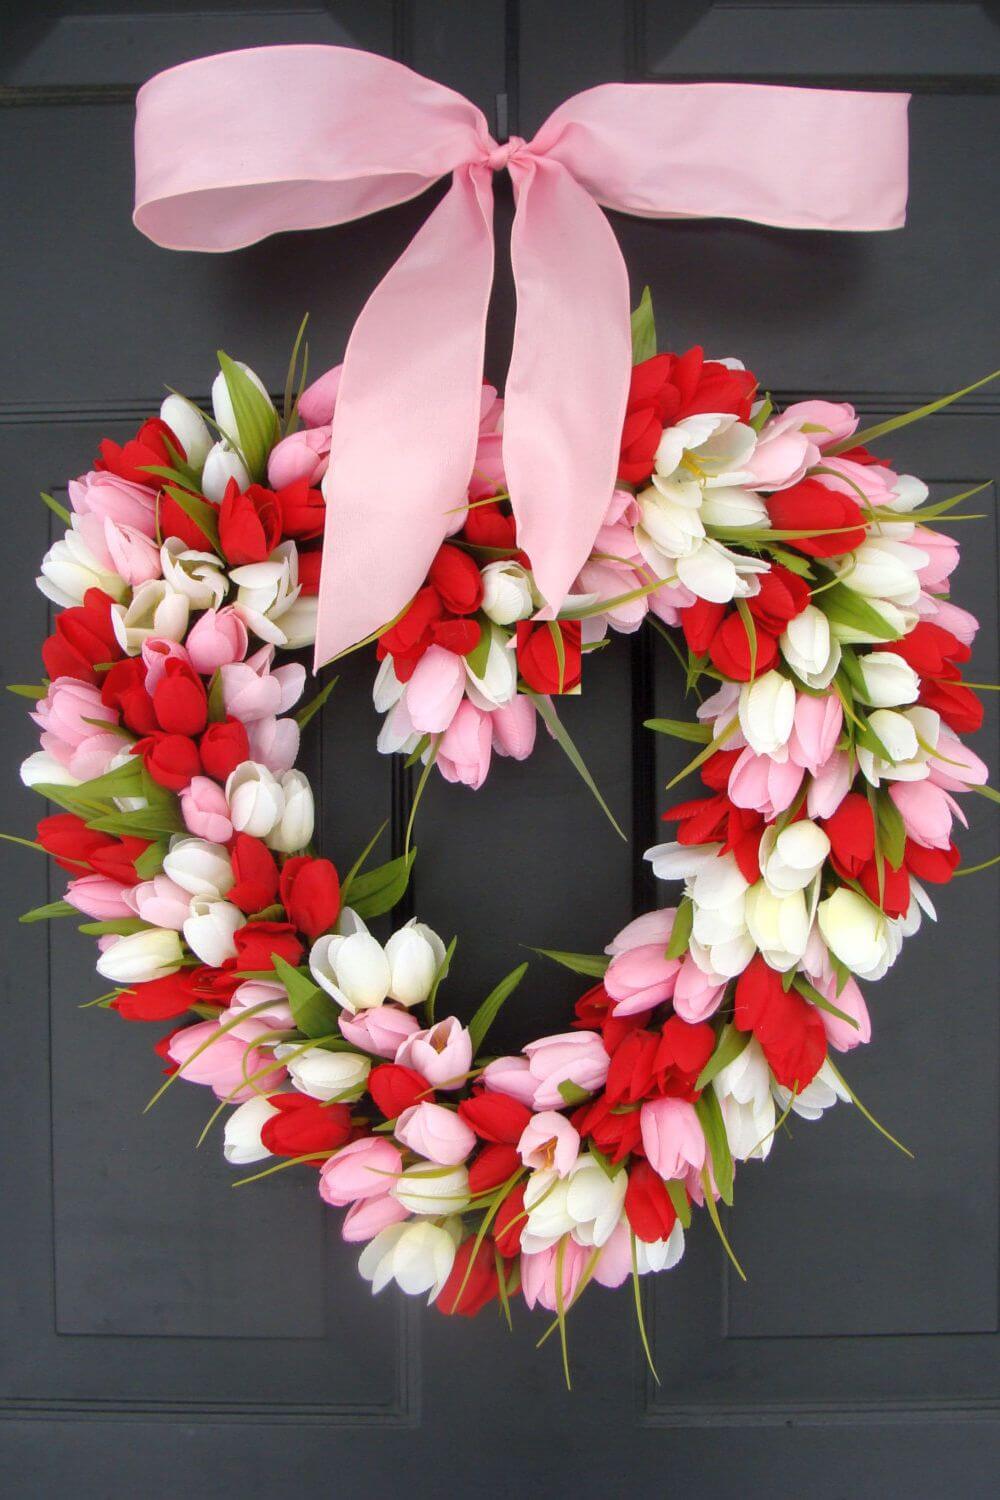 Valentine wreath ideas